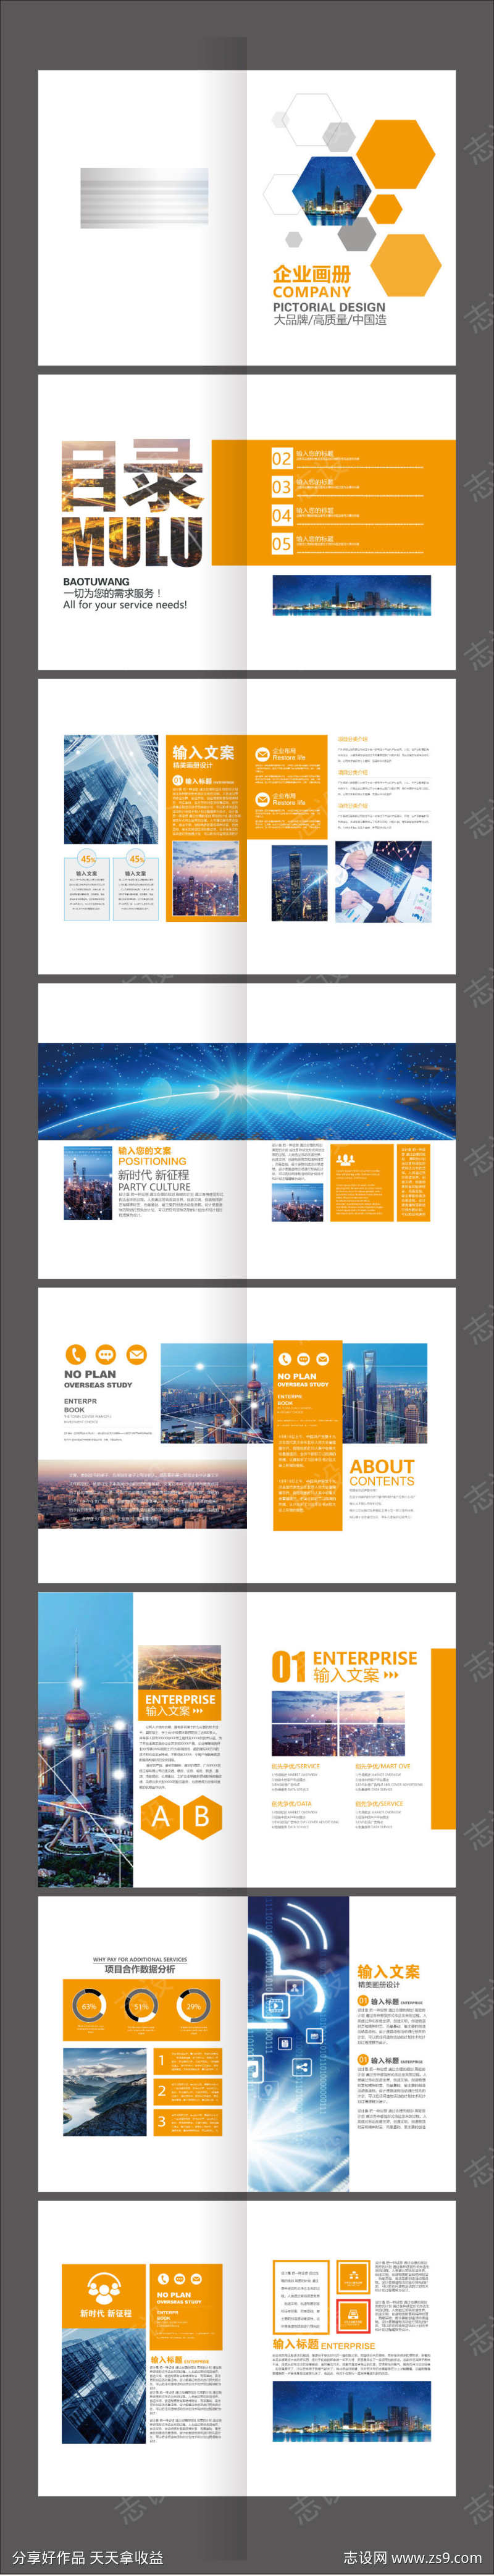 橙色企业项目营销宣传画册